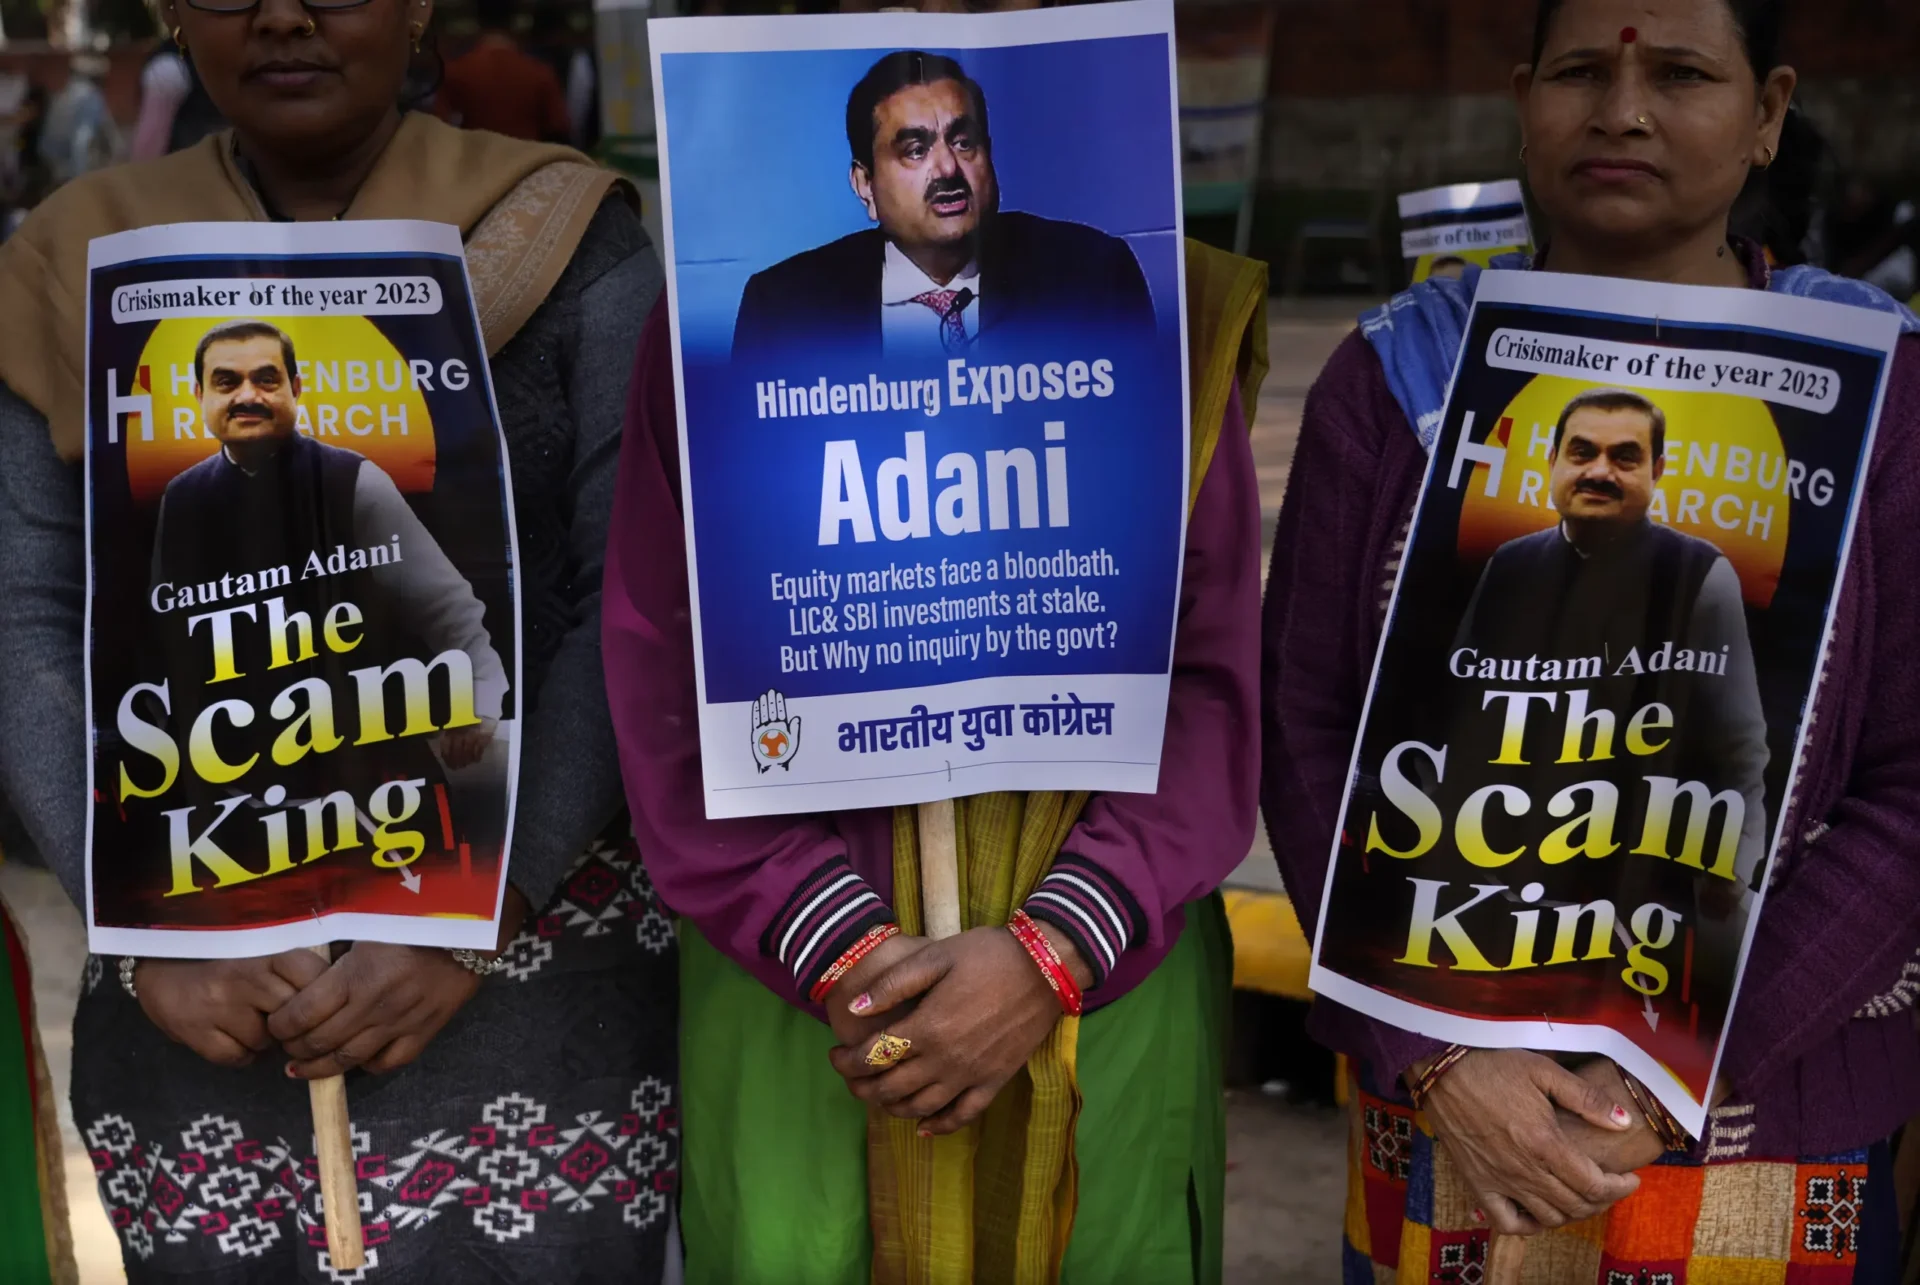 Los problemas de Adani provocan protestas cuando la agitación bursátil se vuelve política